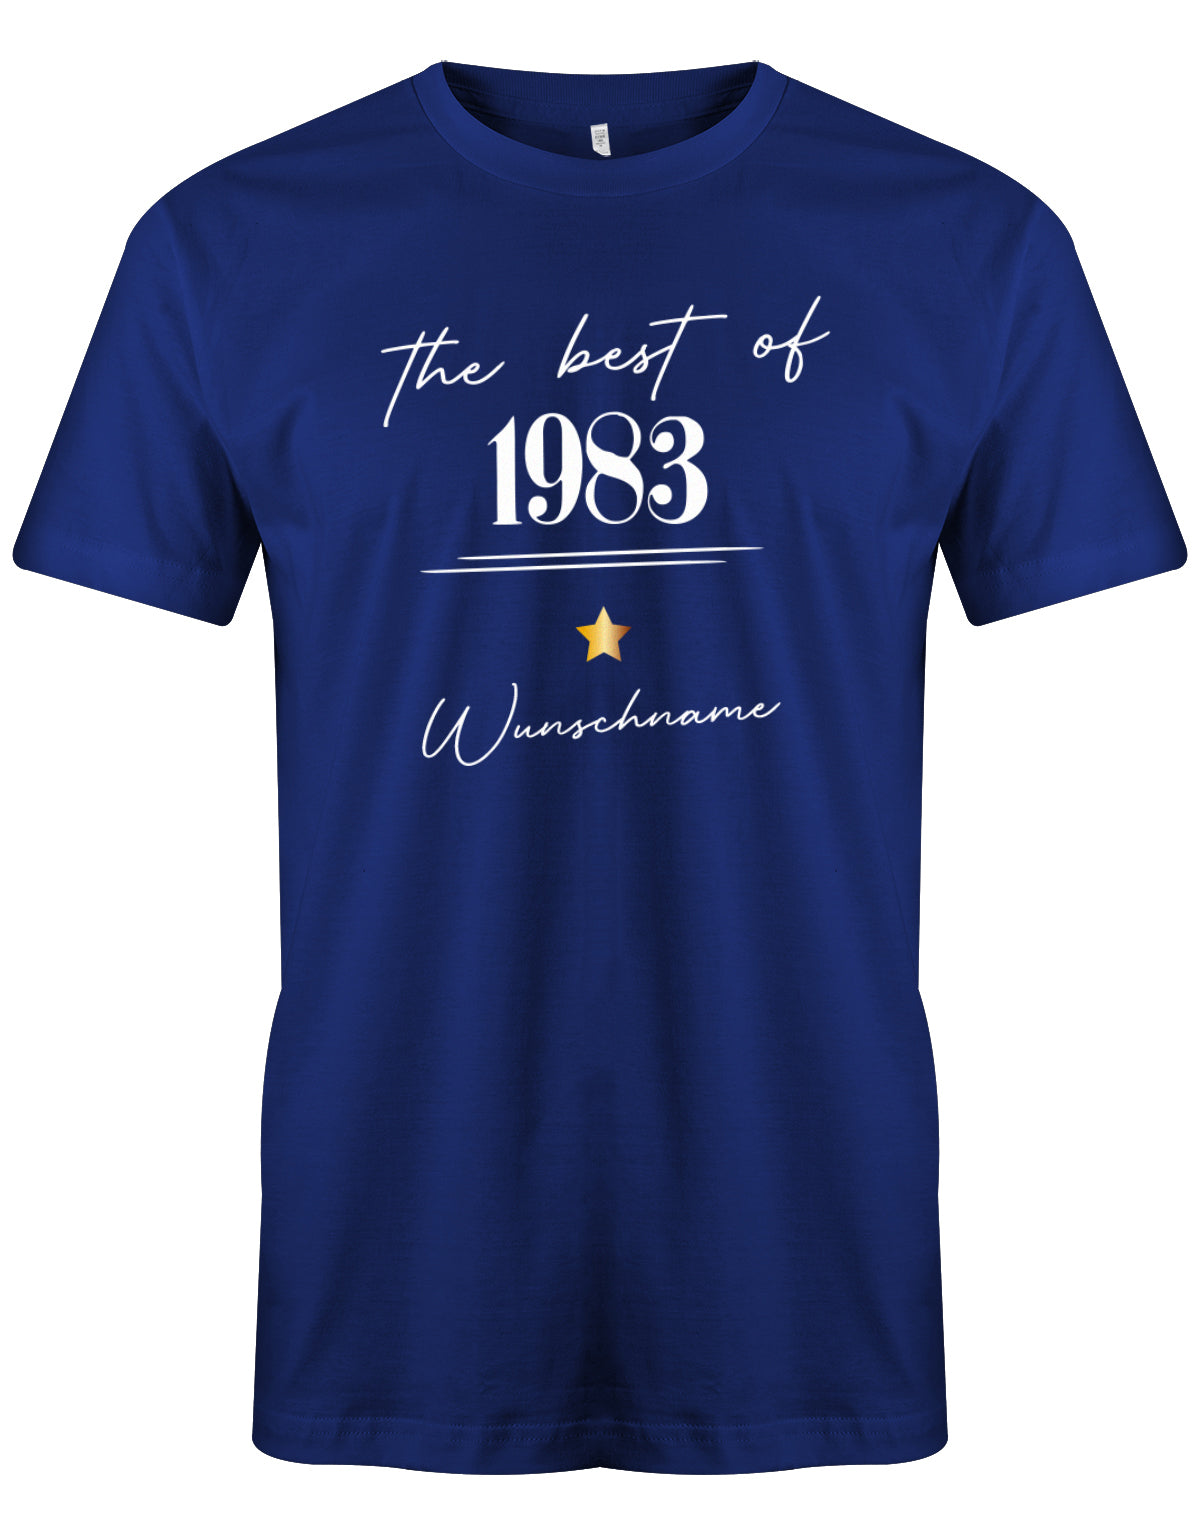 The best of 1983 Minimal mit Stern personalisiert mit Name - T-Shirt 40 Geburtstag Männer myShirtStore Royalblau